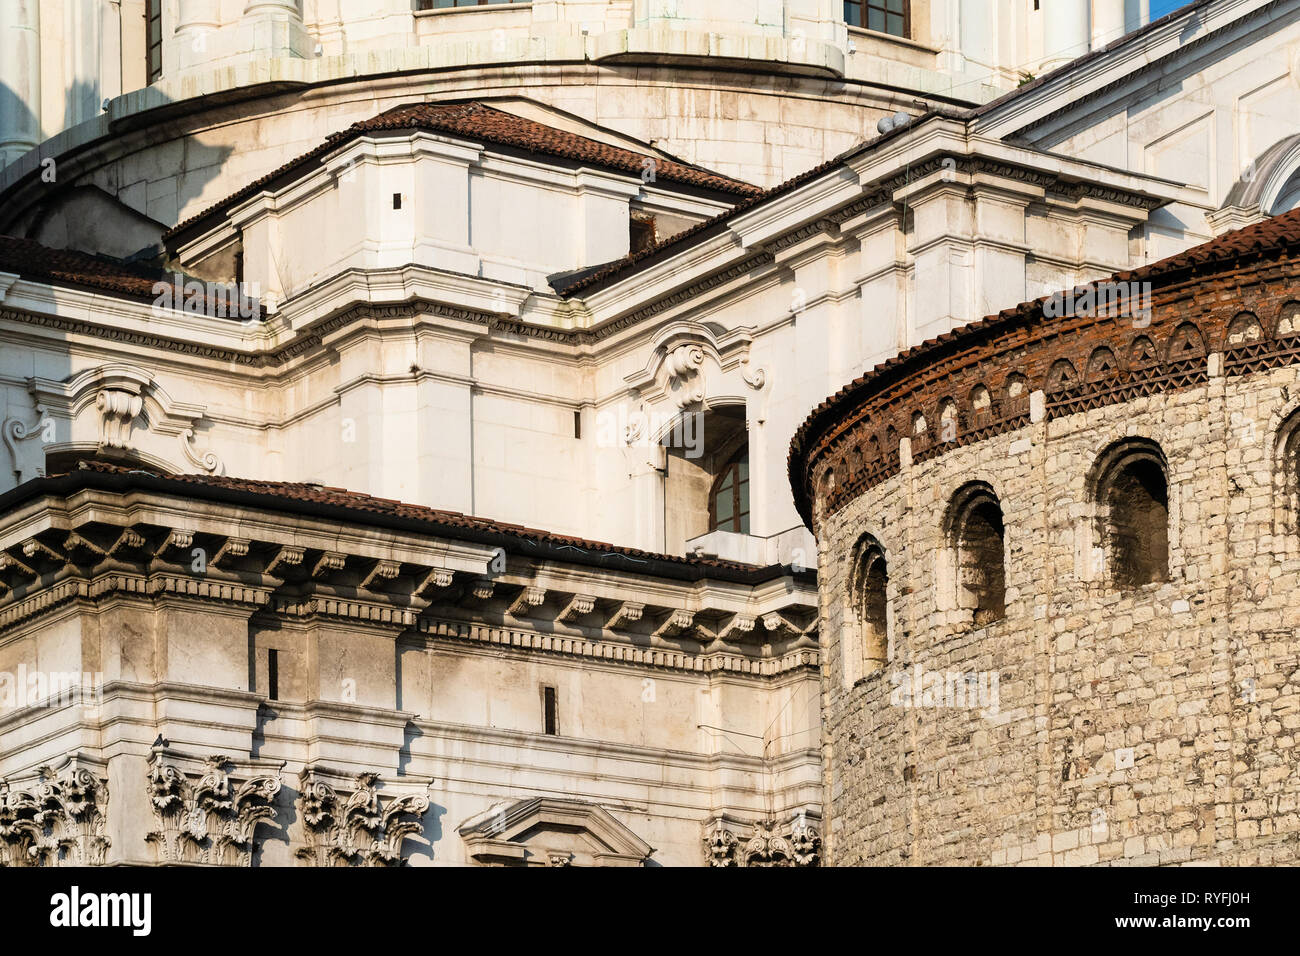 Voyage d'Italie - murs de Duomo vecchio (Rotonda, ancienne cathédrale (Duomo Nuovo) et la nouvelle Cathédrale) dans la ville de Brescia, Lombardie Banque D'Images